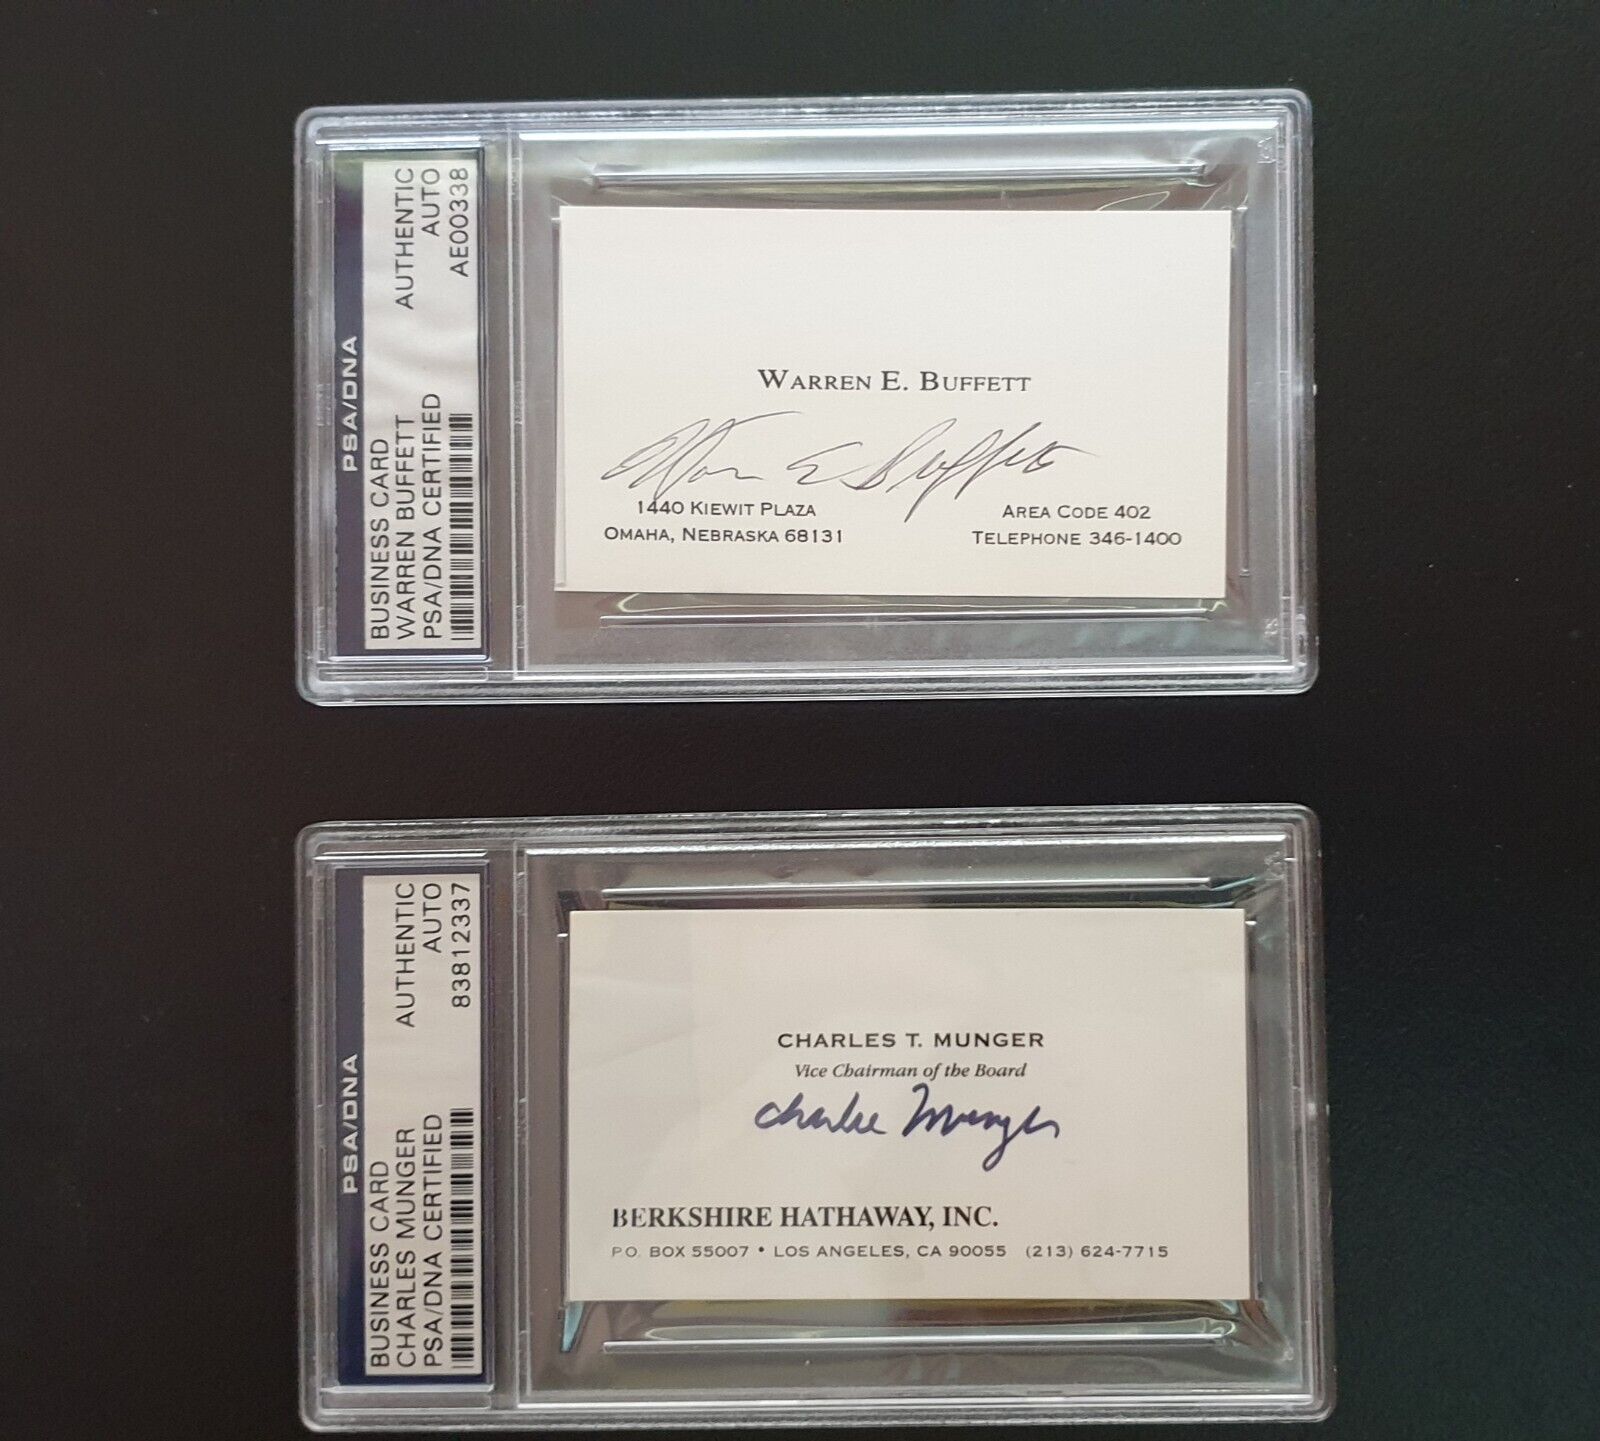 Warren Buffett & Charlie Munger Autographed Business Cards